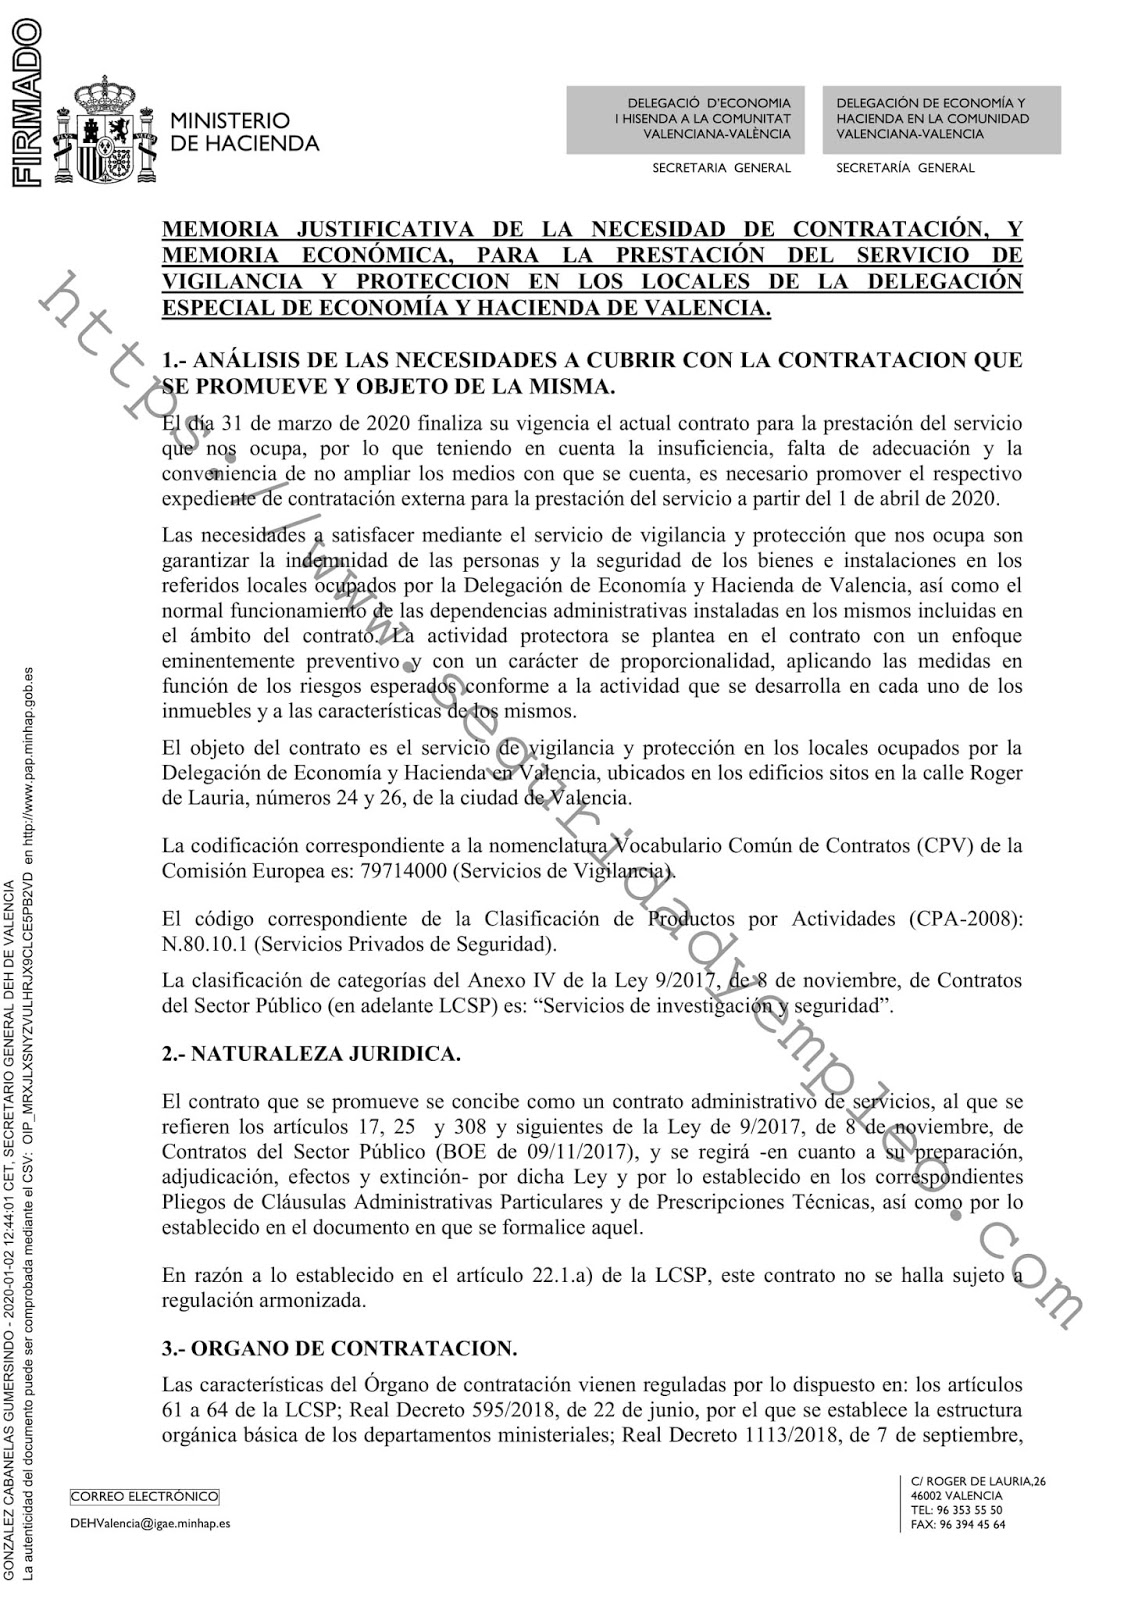 Sale a concurso el Contrato de prestación del servicio de vigilancia y protección de la Delegación de Economía y Hacienda de Valencia